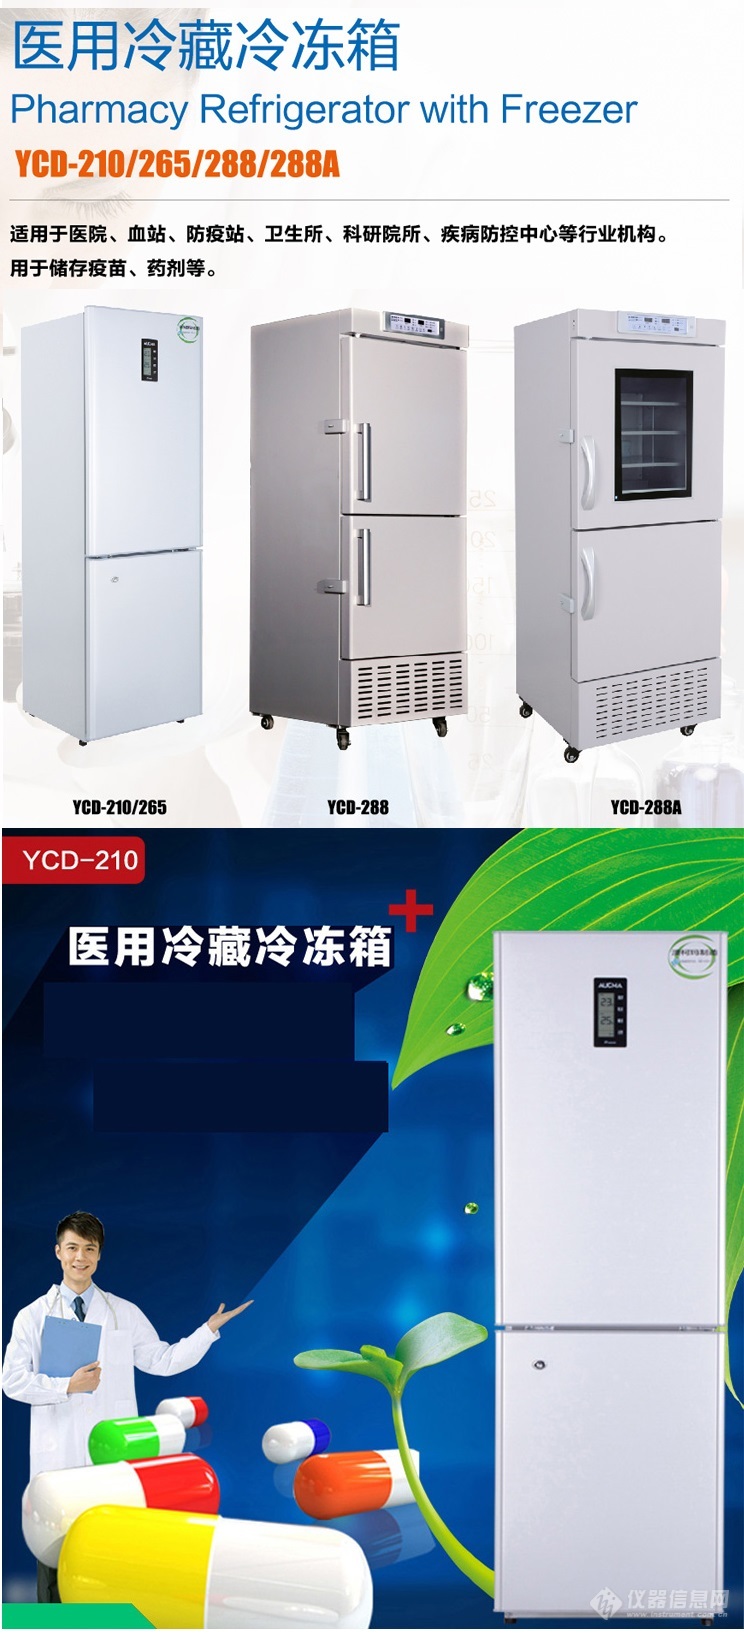 YCD-265医用冷藏冷冻箱.jpg